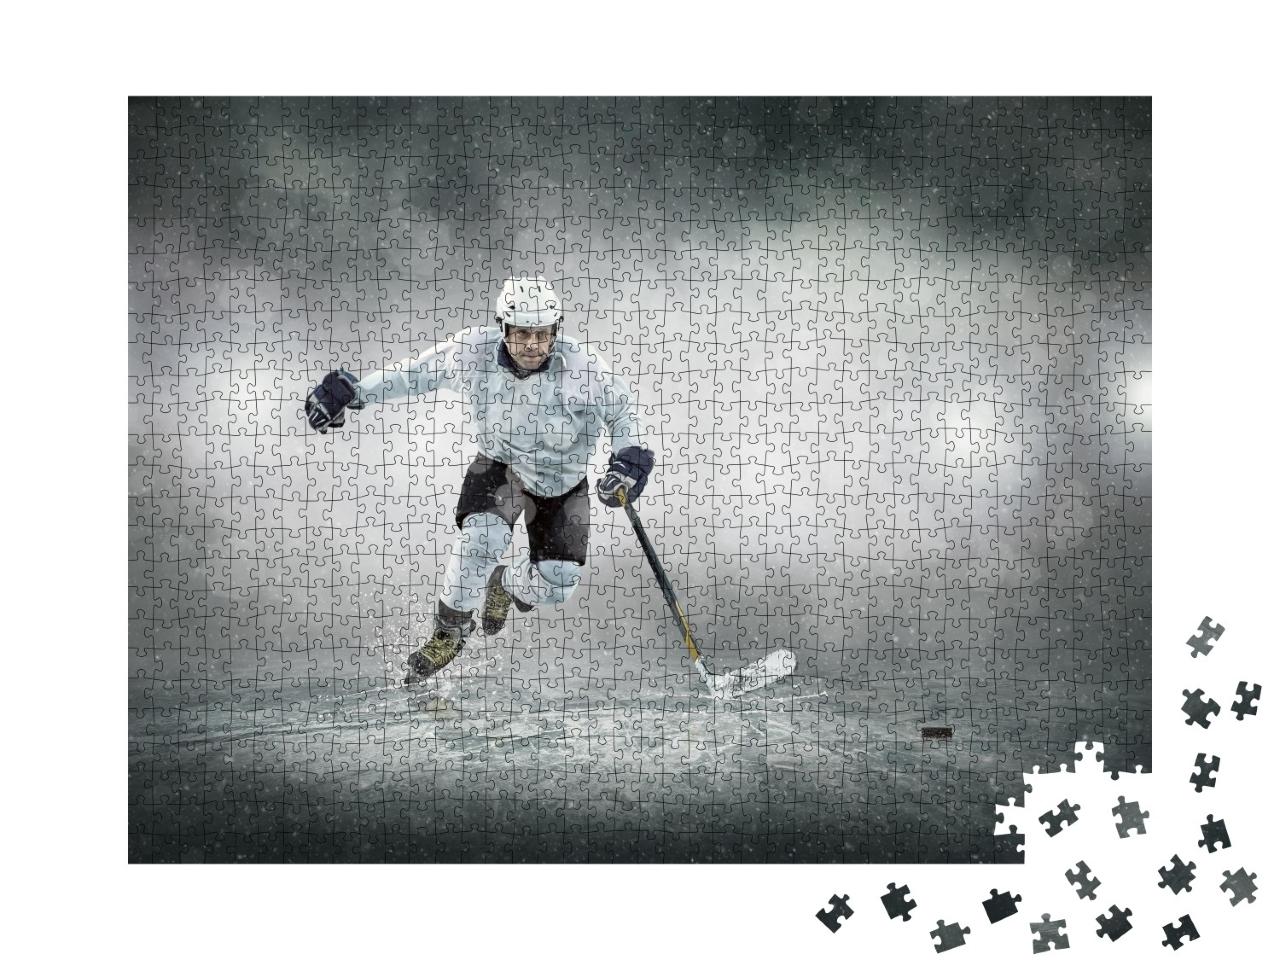 Puzzle de 1000 pièces « Joueurs de hockey sur glace »